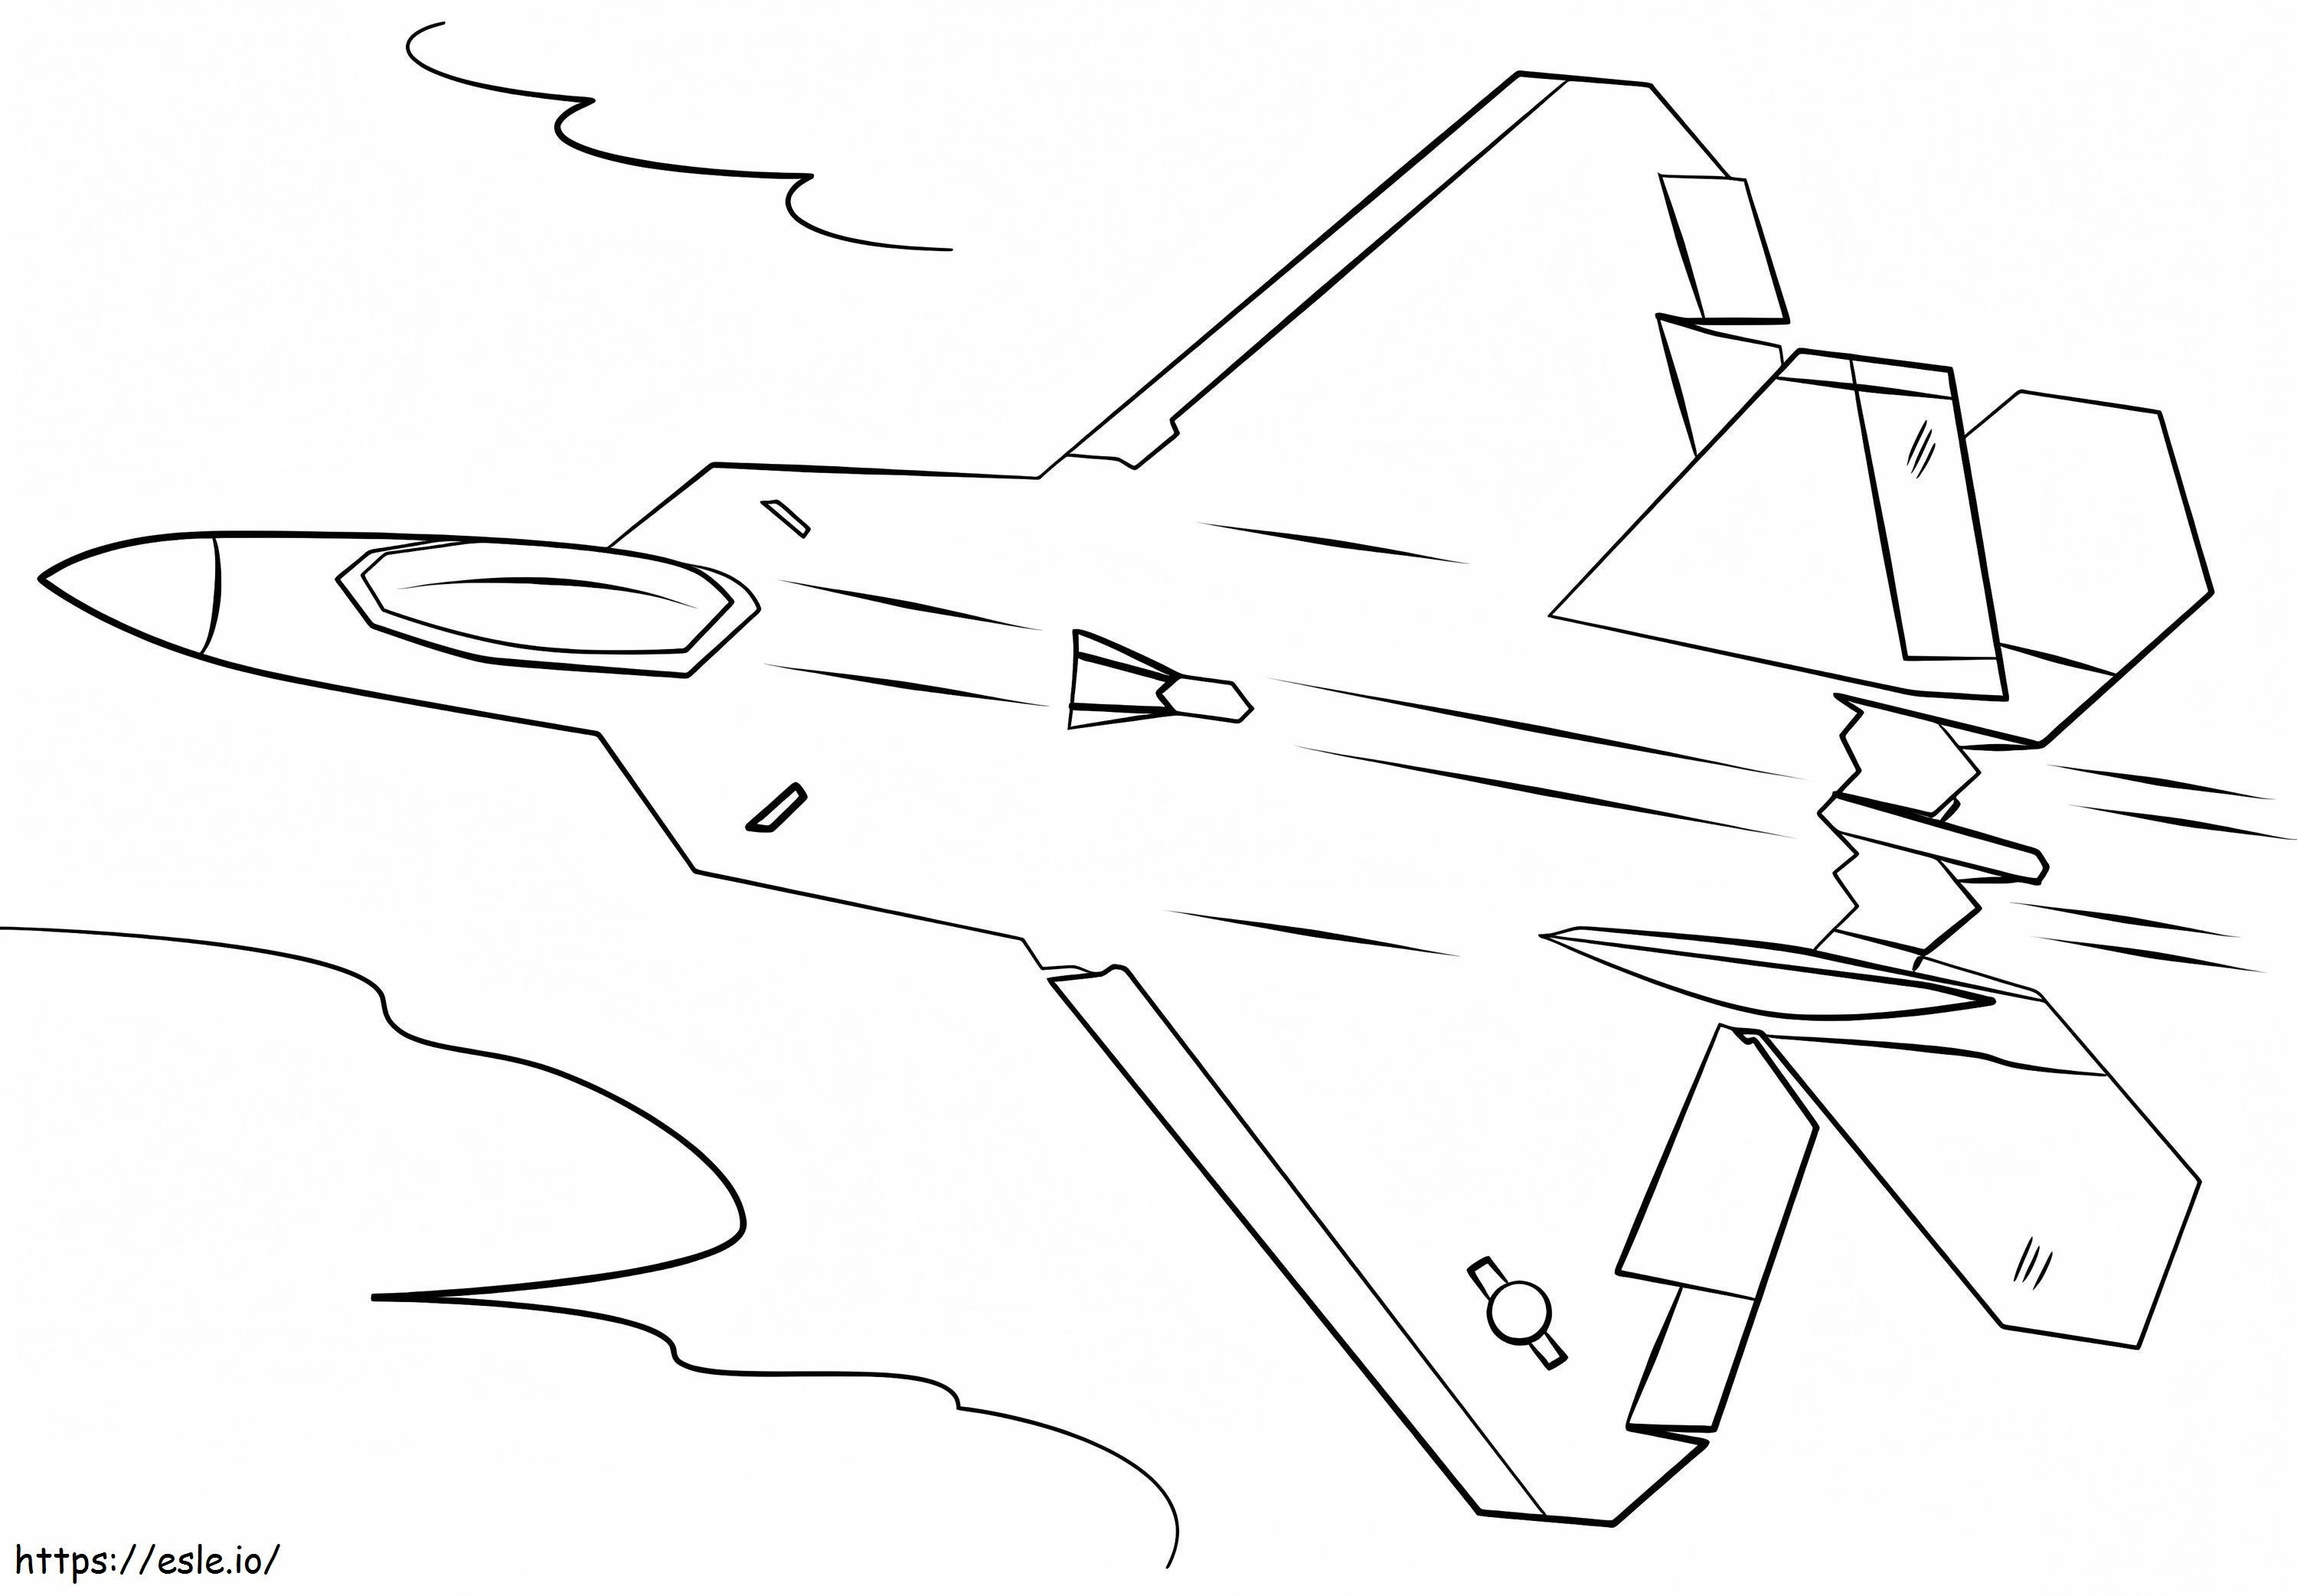 Myśliwiec F 22 Raptor kolorowanka